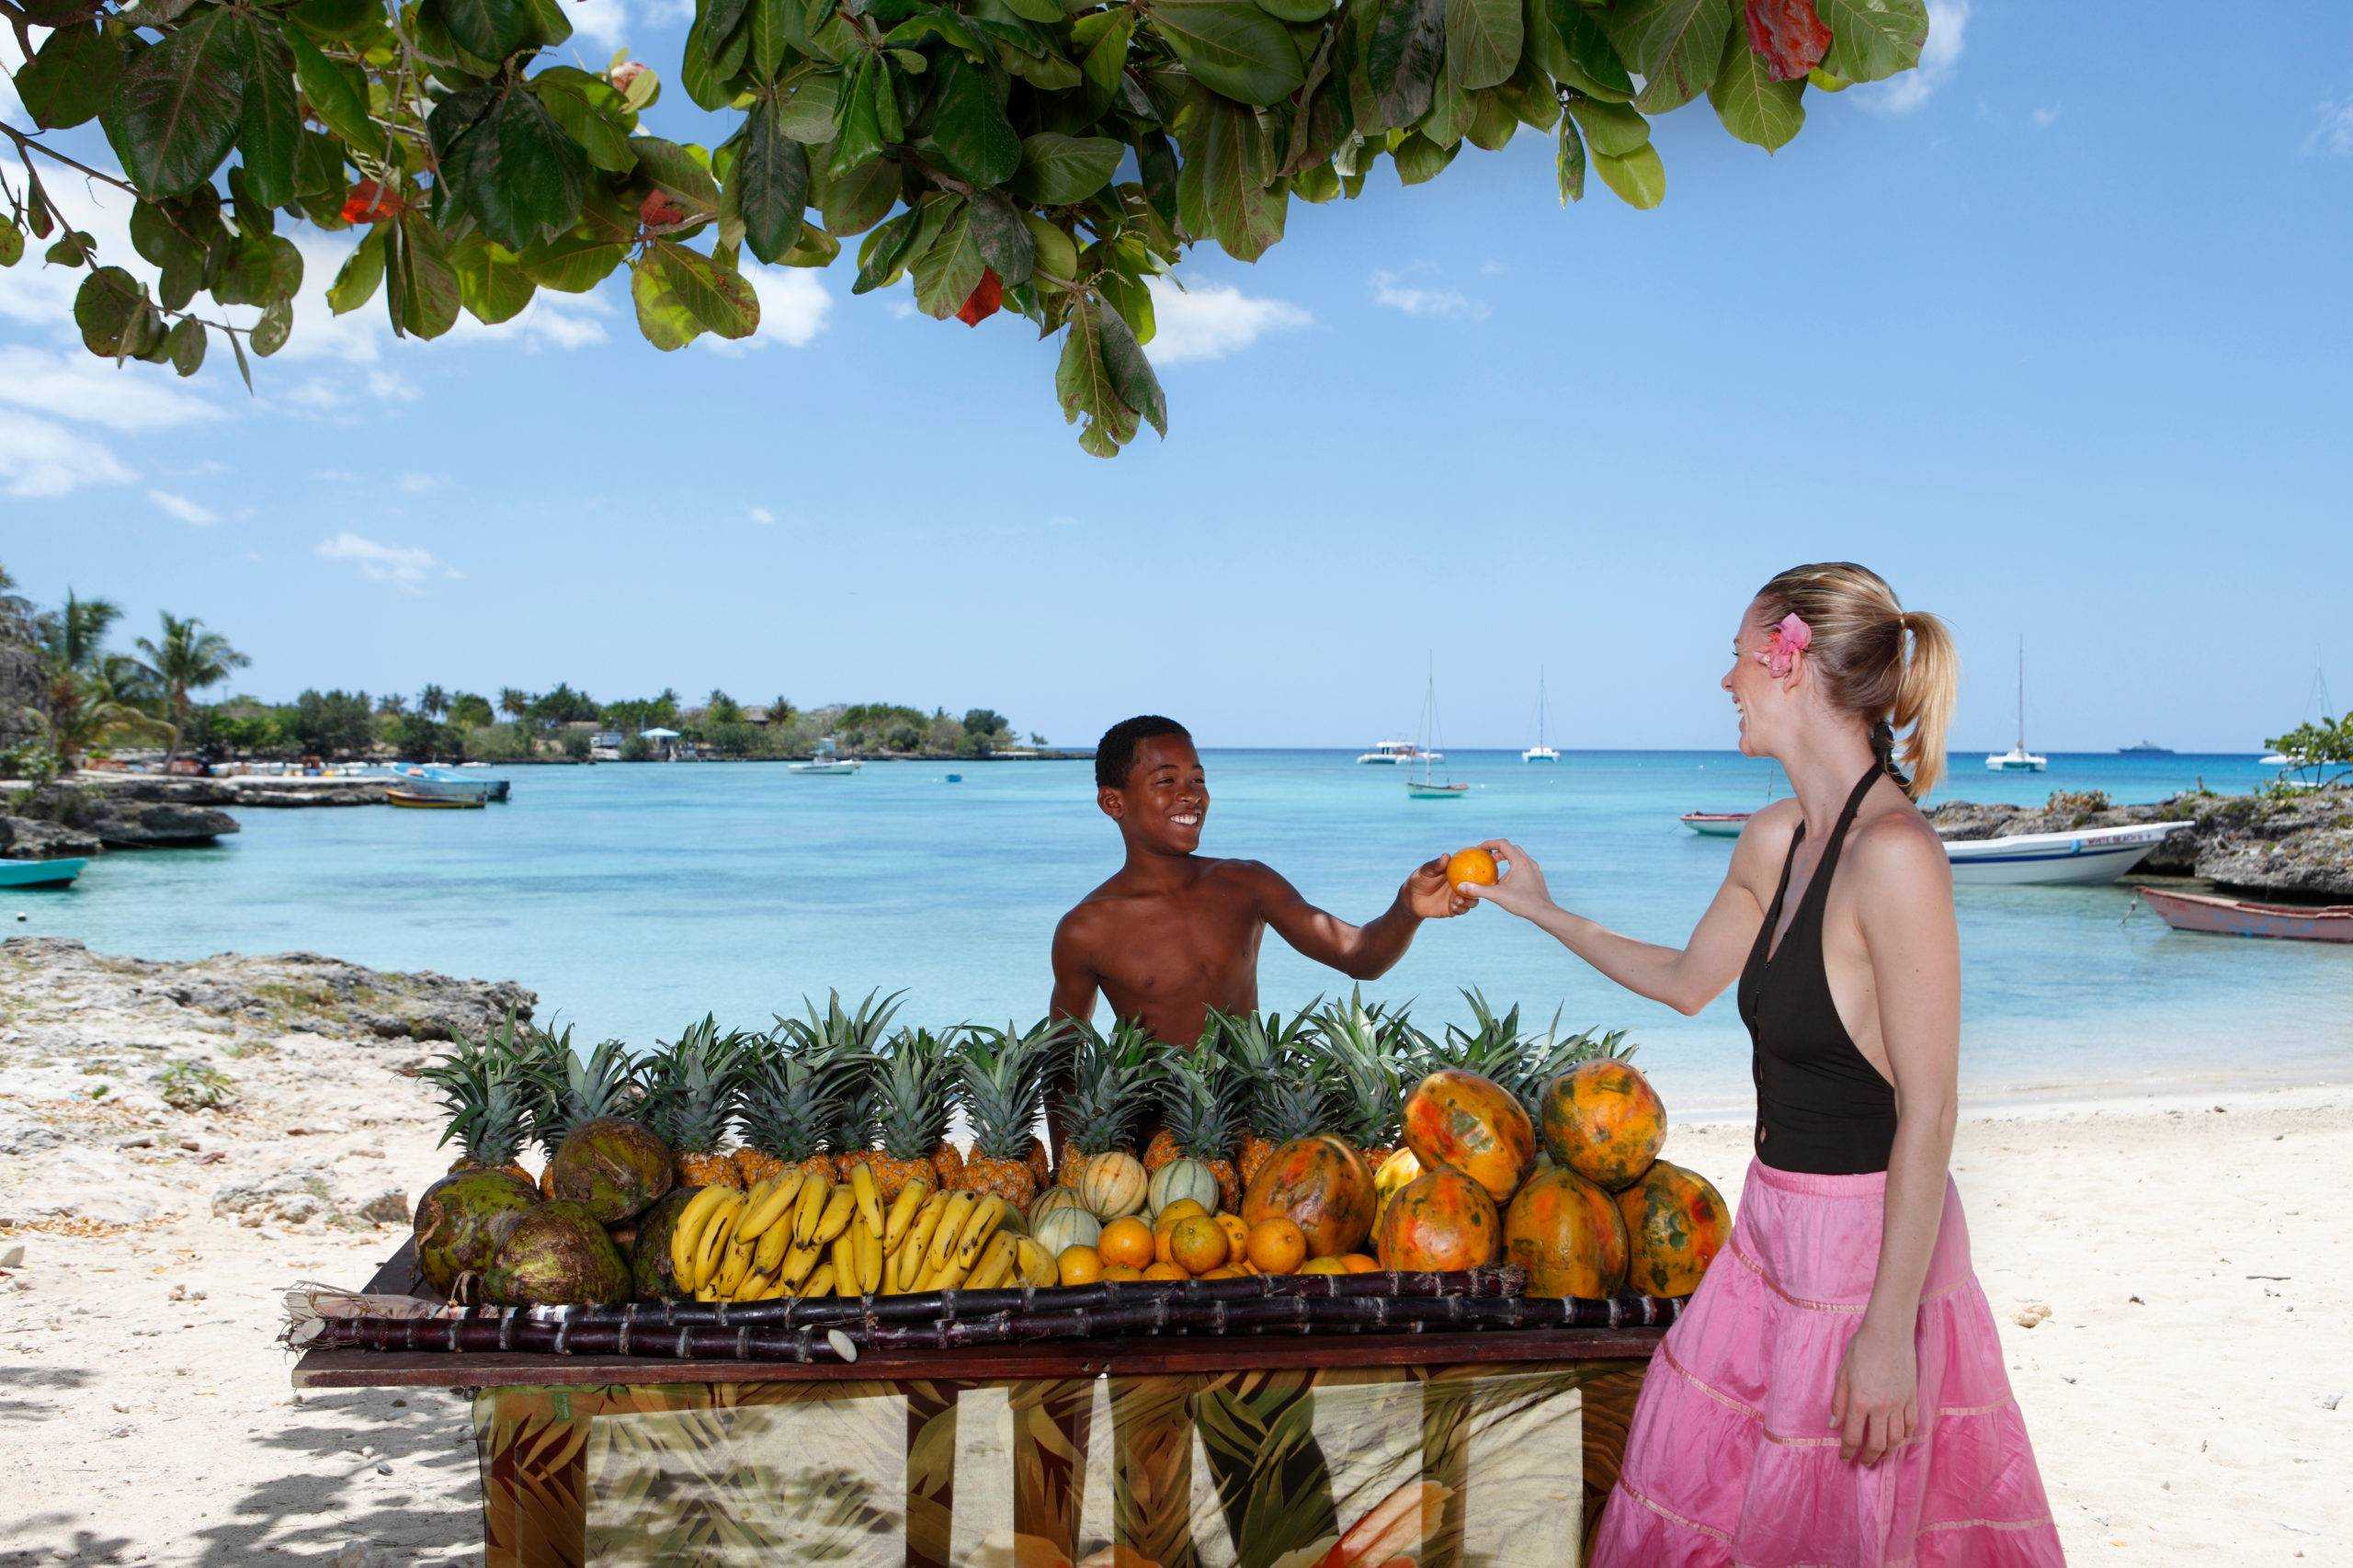 Погода в Доминикане в декабре Стоит ли ехать Температура на популярных курортах Отзывы туристов об отдыхе Цены на туры Чем заняться: экскурсии, праздники и фестивали